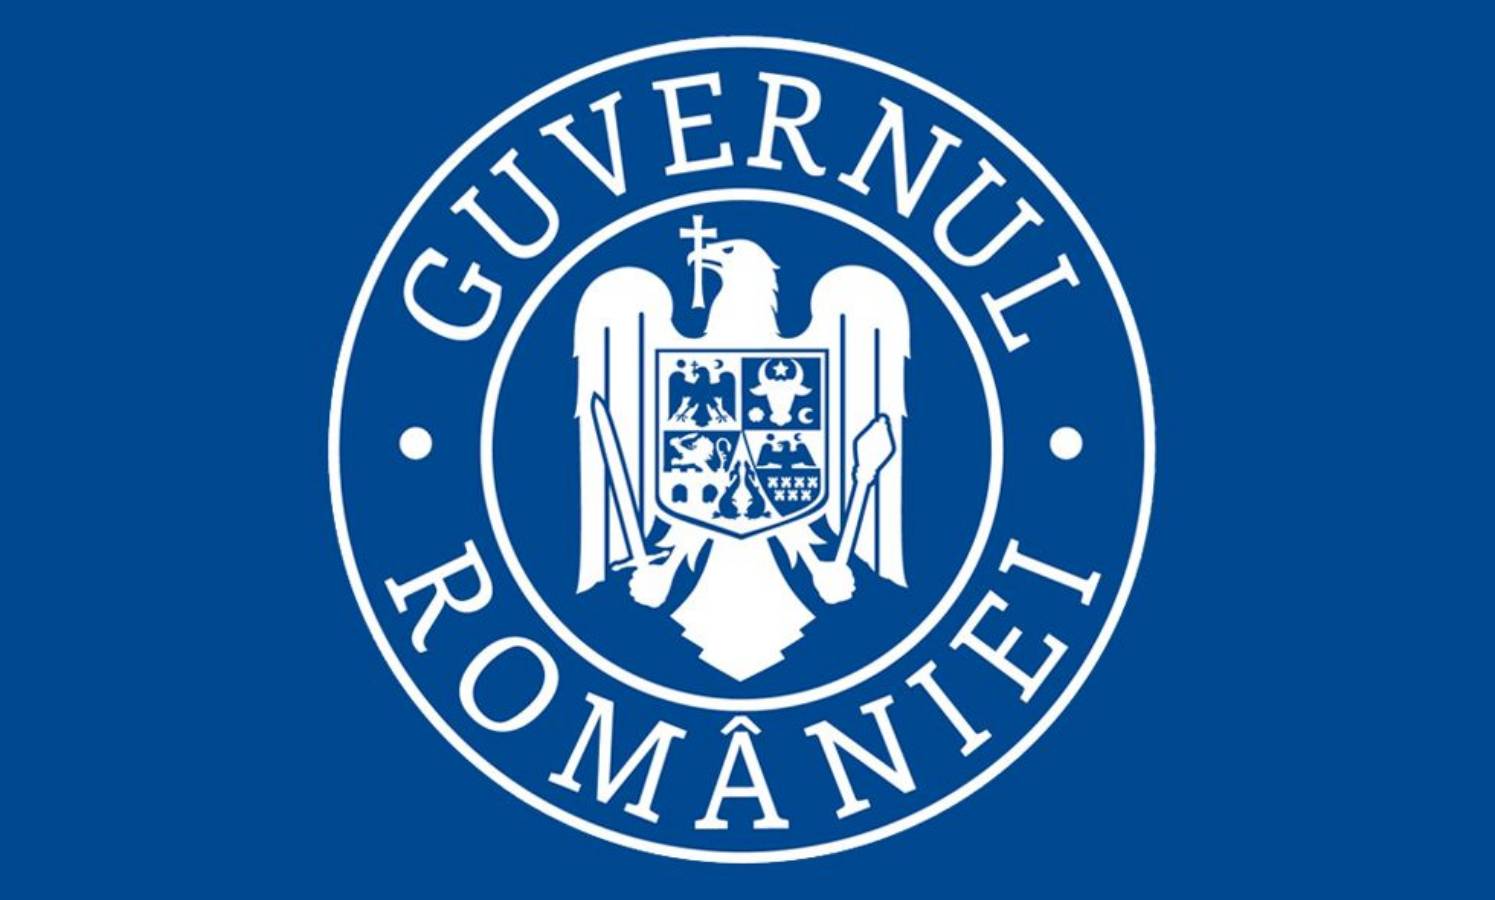 Guvernul Romaniei suspendare scoala